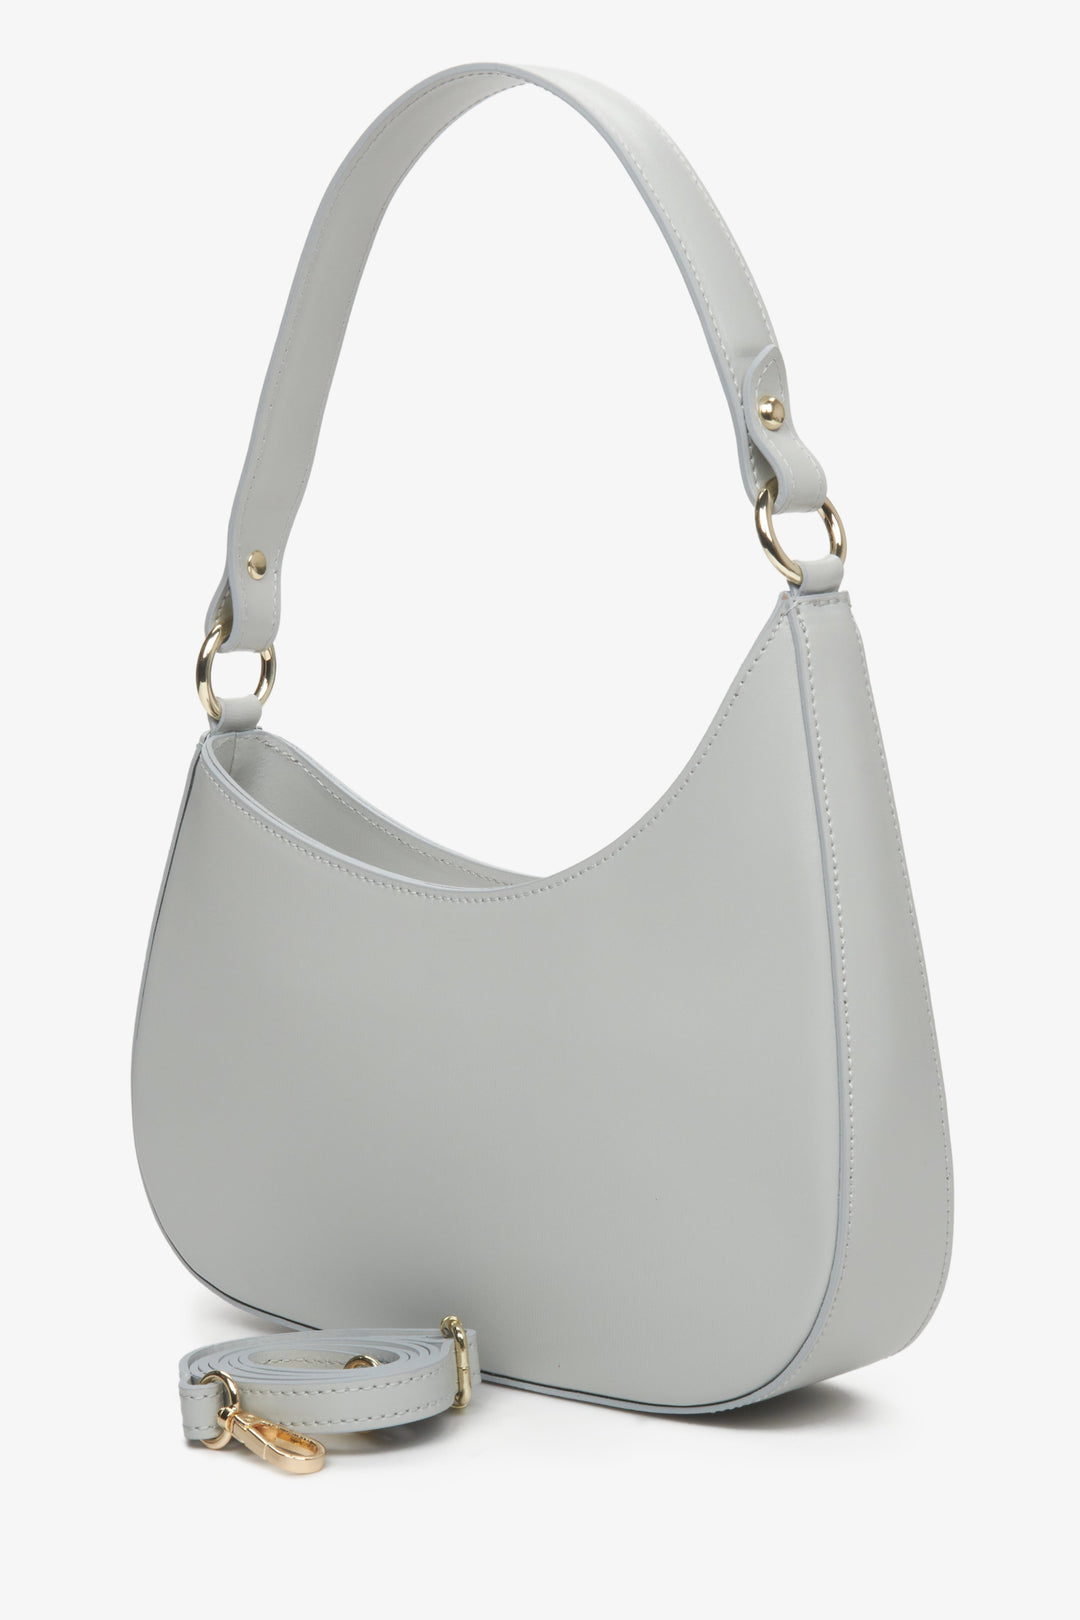 Women's grey Estro shoulder bag with detachable strap.